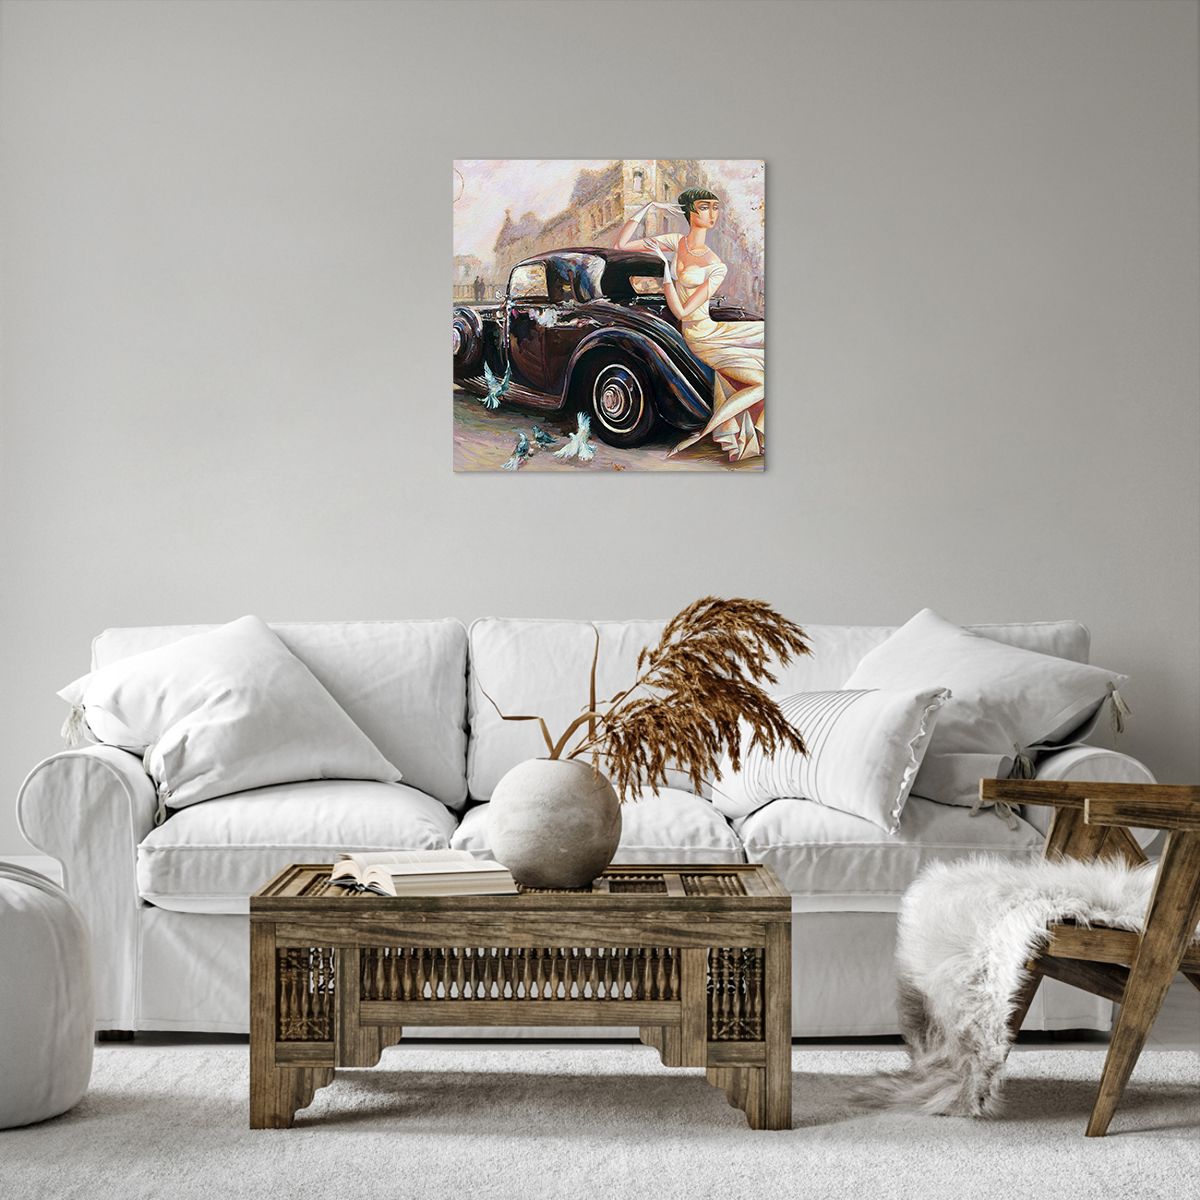 Bild auf Leinwand Retro-Auto, Bild auf Leinwand Frau, Bild auf Leinwand Palast, Bild auf Leinwand Automobil, Bild auf Leinwand Kunst